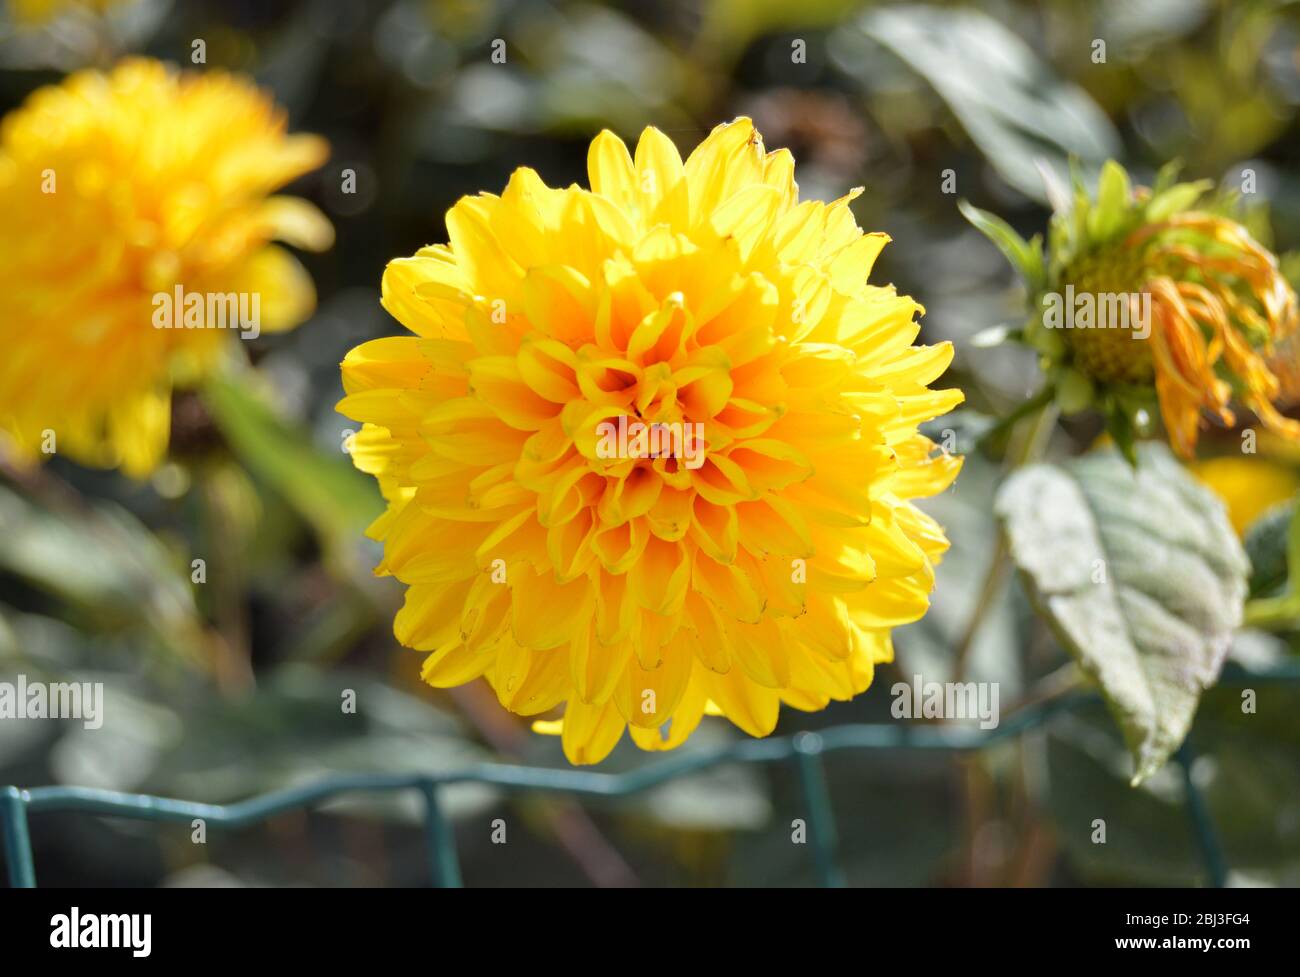 Primo piano di un fiore giallo Dhalia fiorente, menzmerizing motivi in natura, girato centrato con sfondo bookeh sfocato Foto Stock